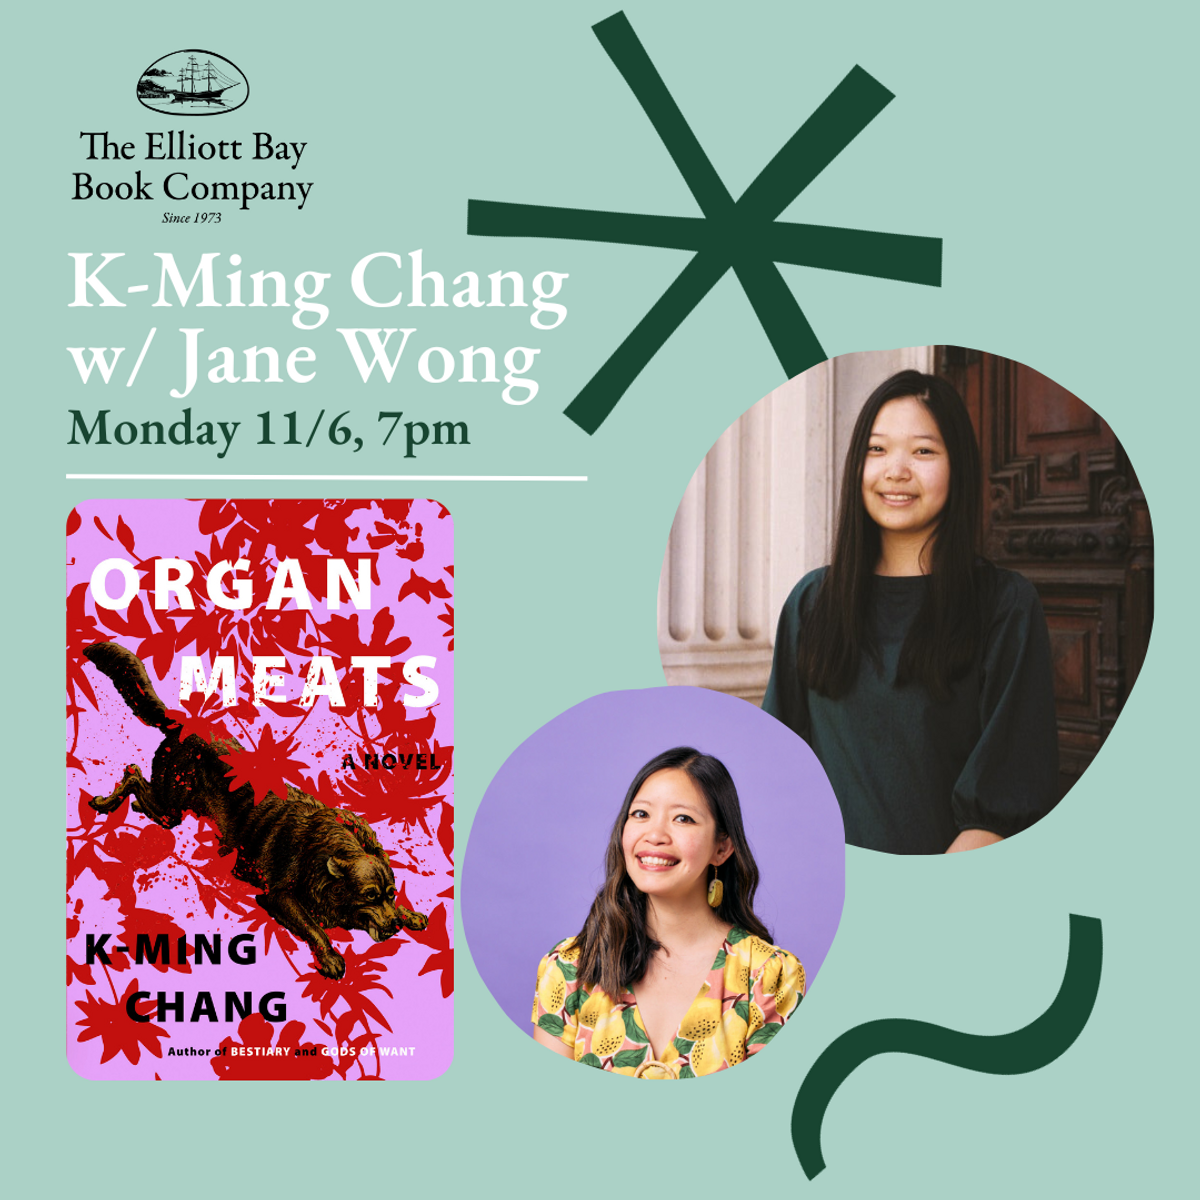 K-Ming Chang与Jane Wong将于11月6日星期一在西雅图的Elliott Bay Book Company举办活动